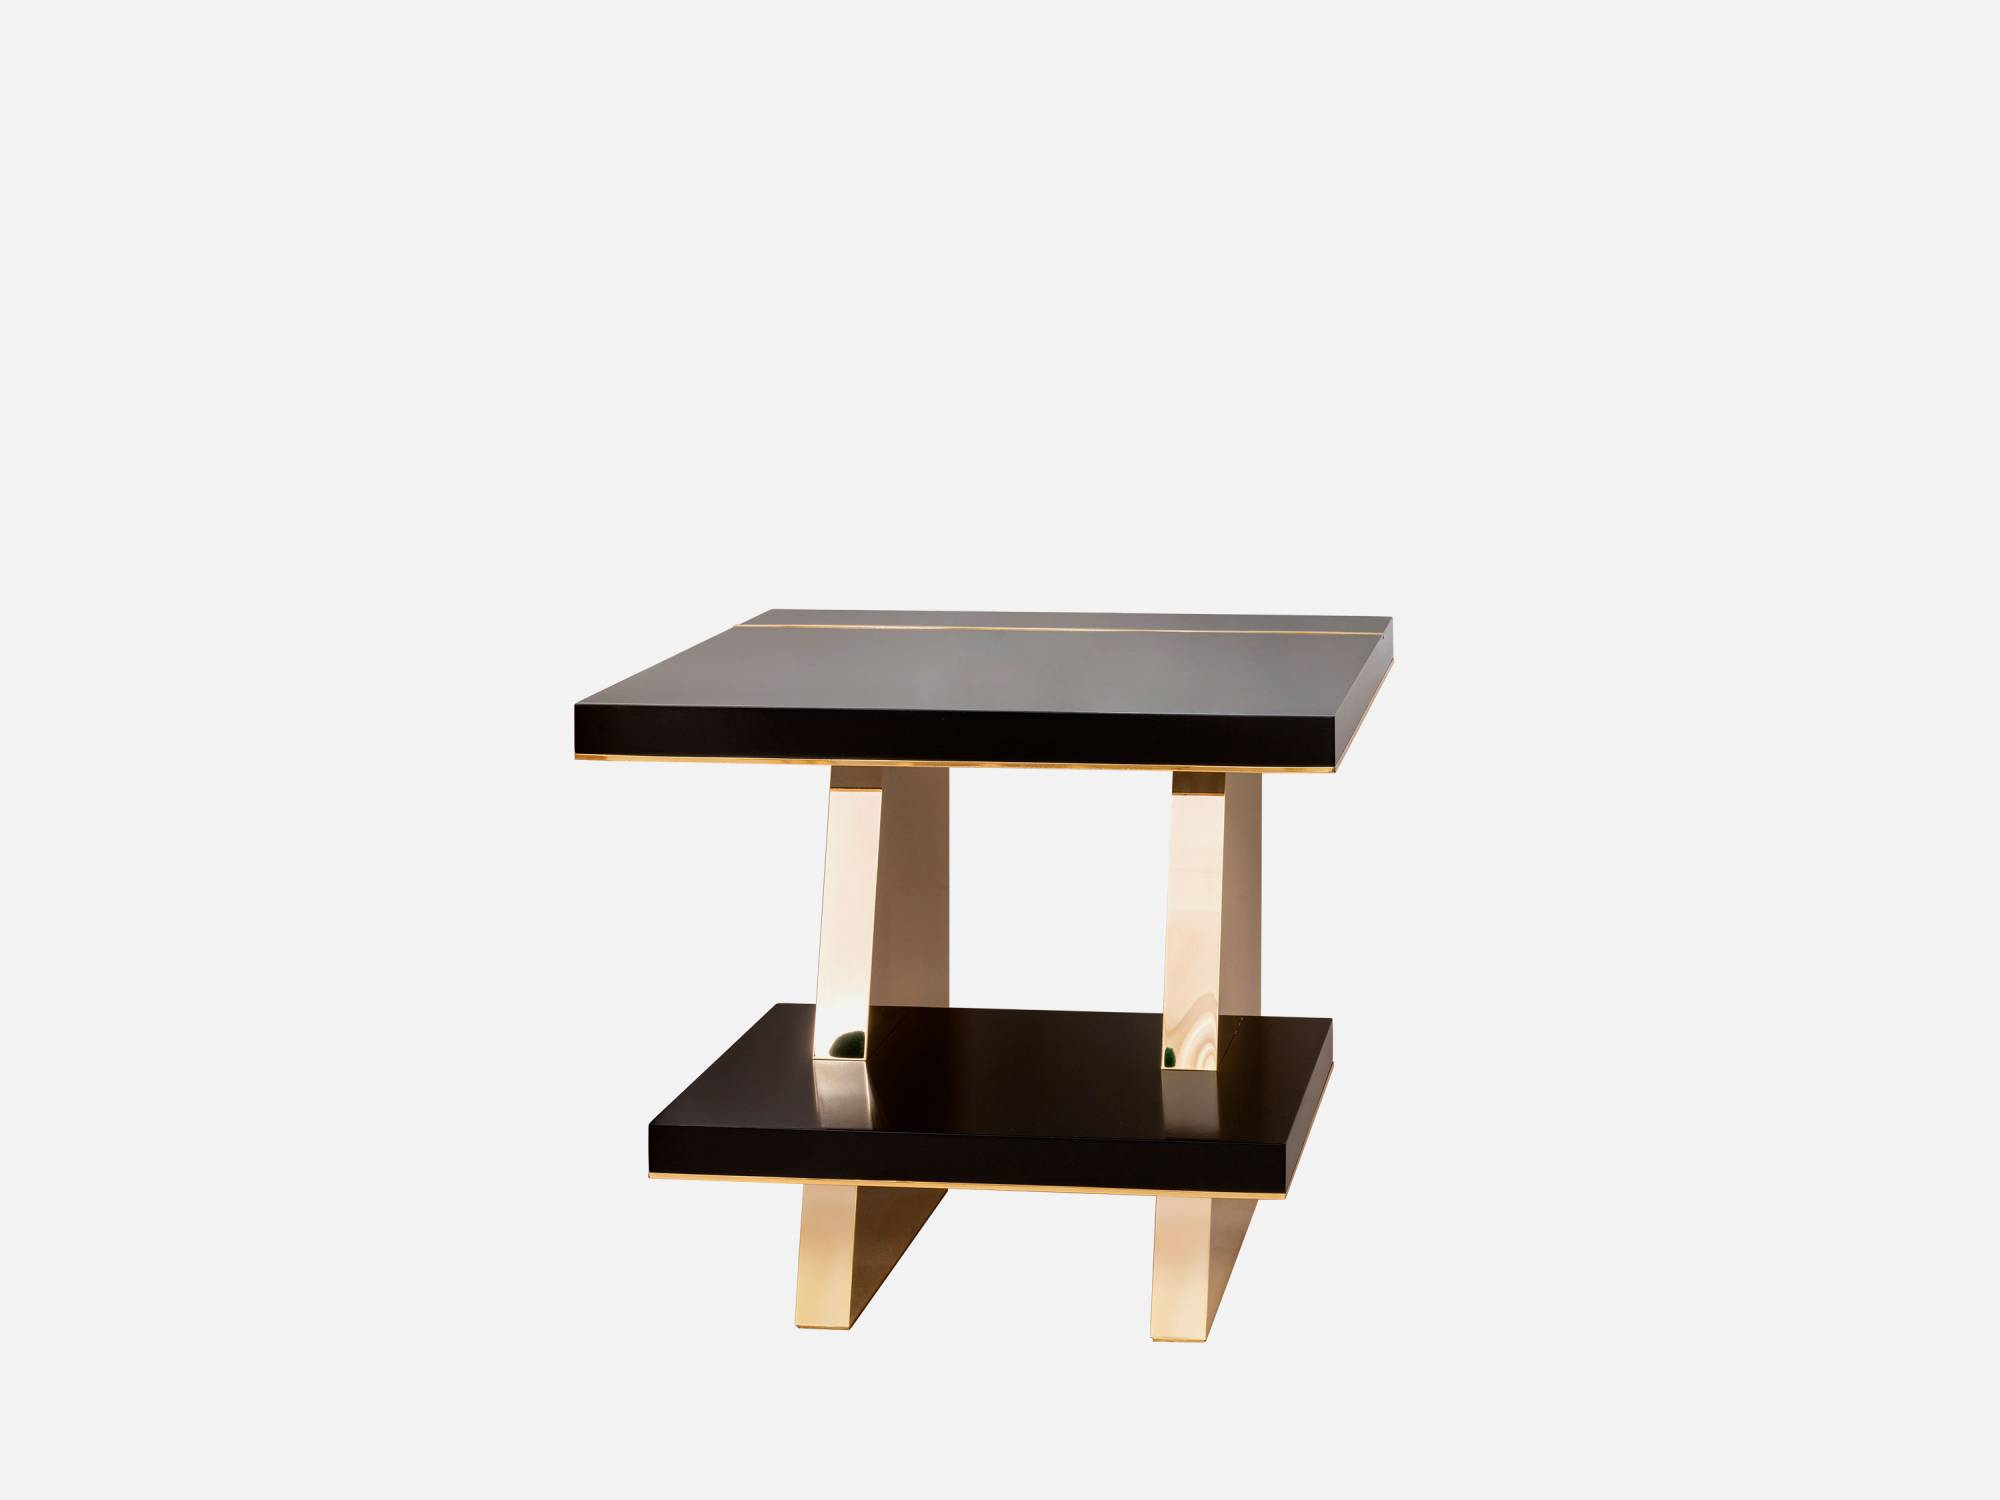 ART. 2286-23 – C.G. Capelletti Italian Luxury Classic Small tables. Made in Italy classic interior design